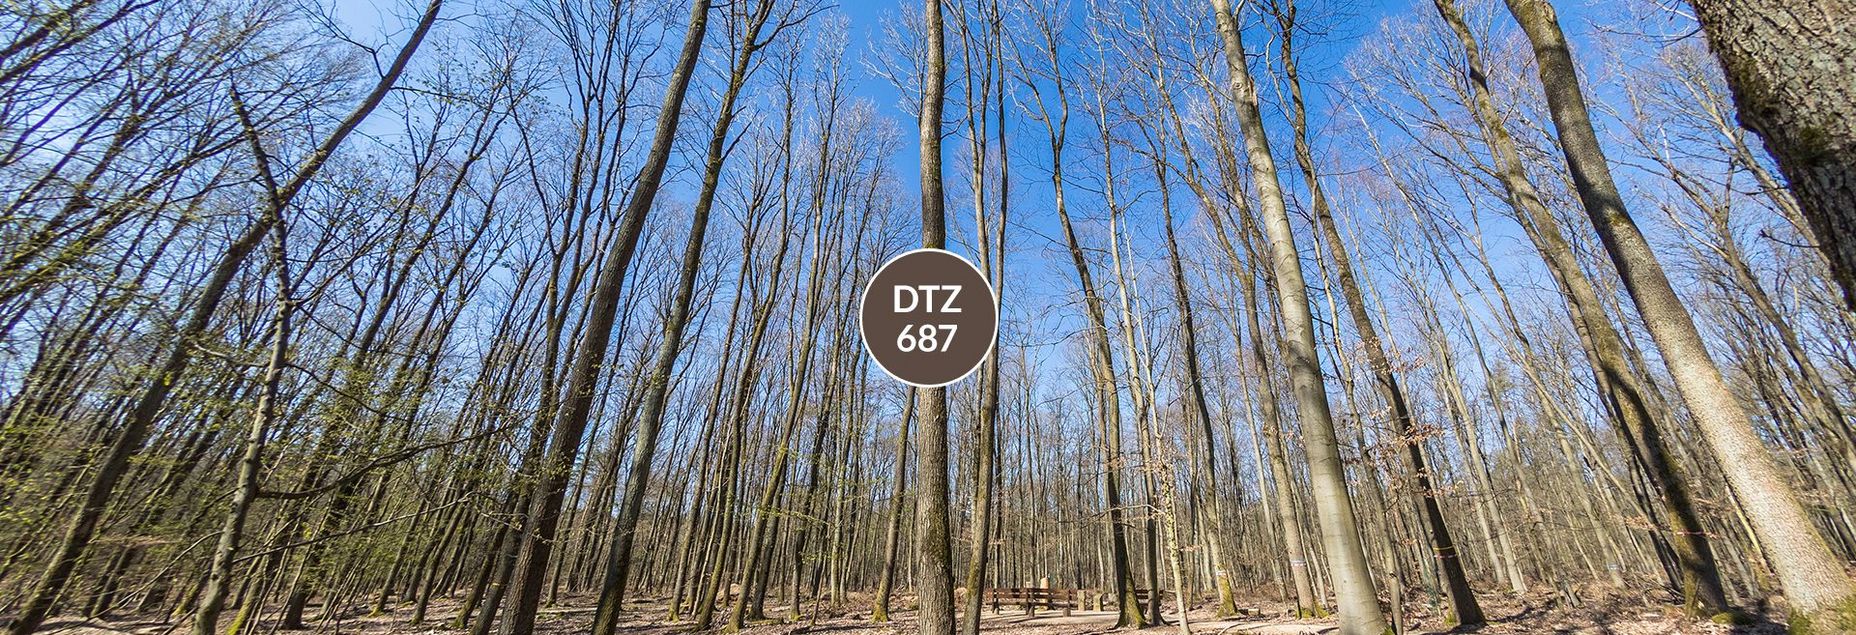 DTZ 687 - Baum